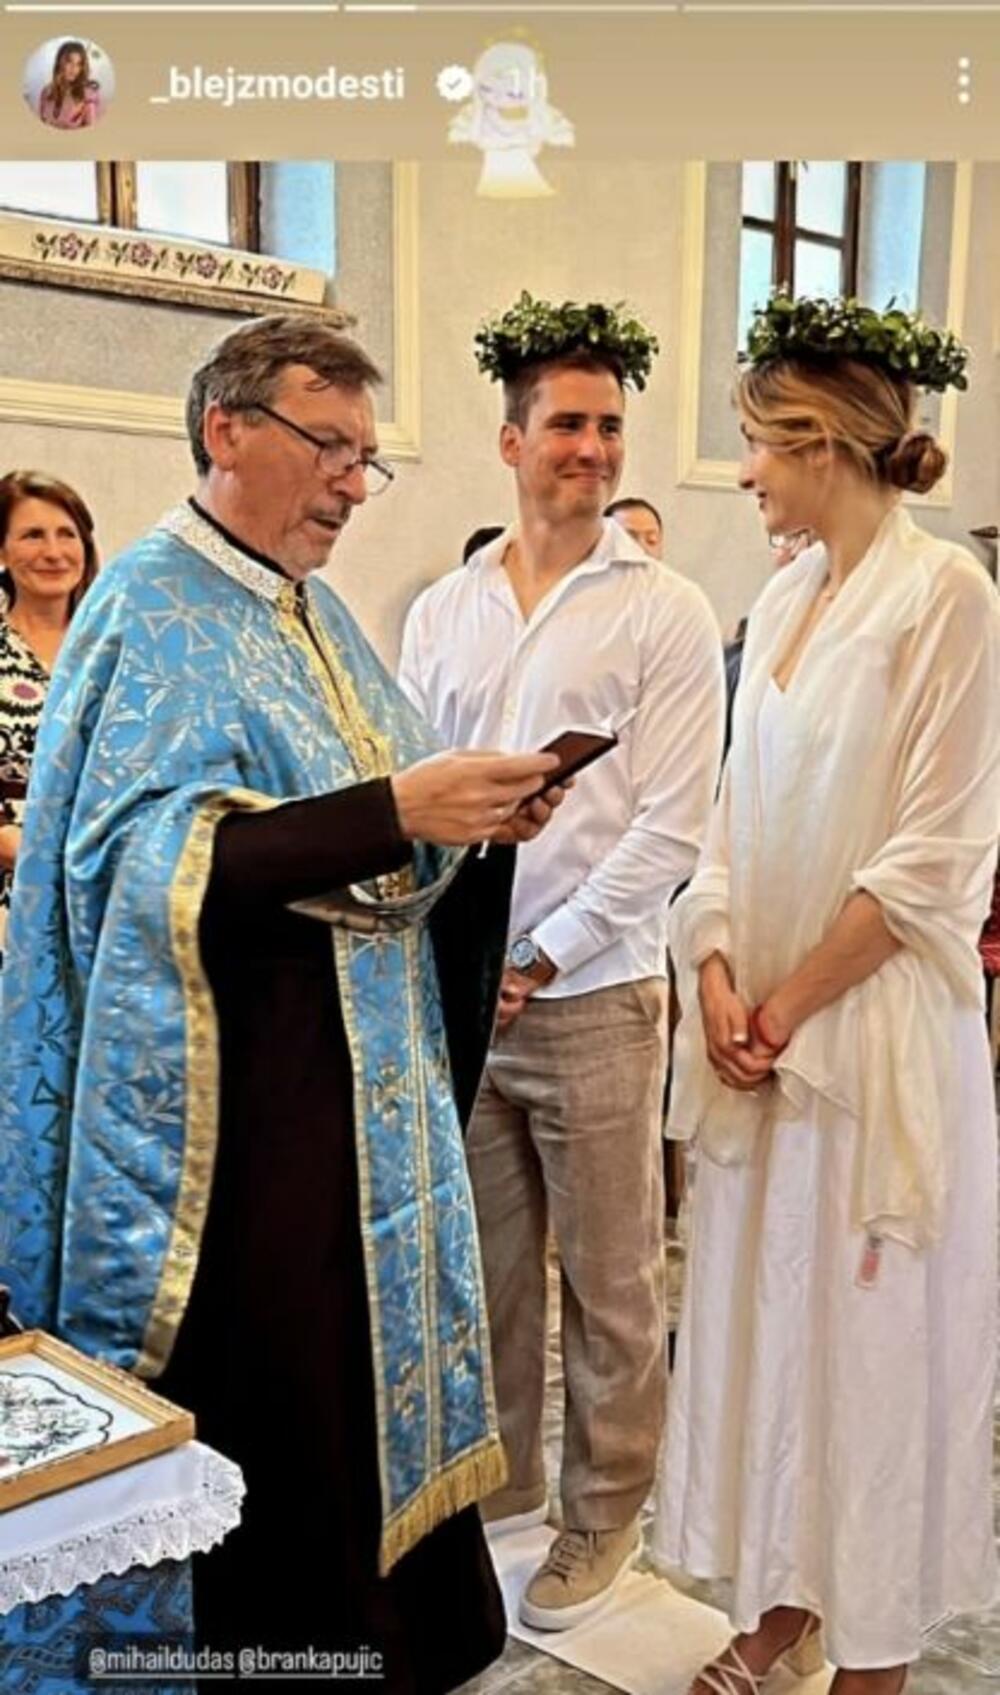 Anđela Jovanović objavila fotografije sa crkvenog venčanja